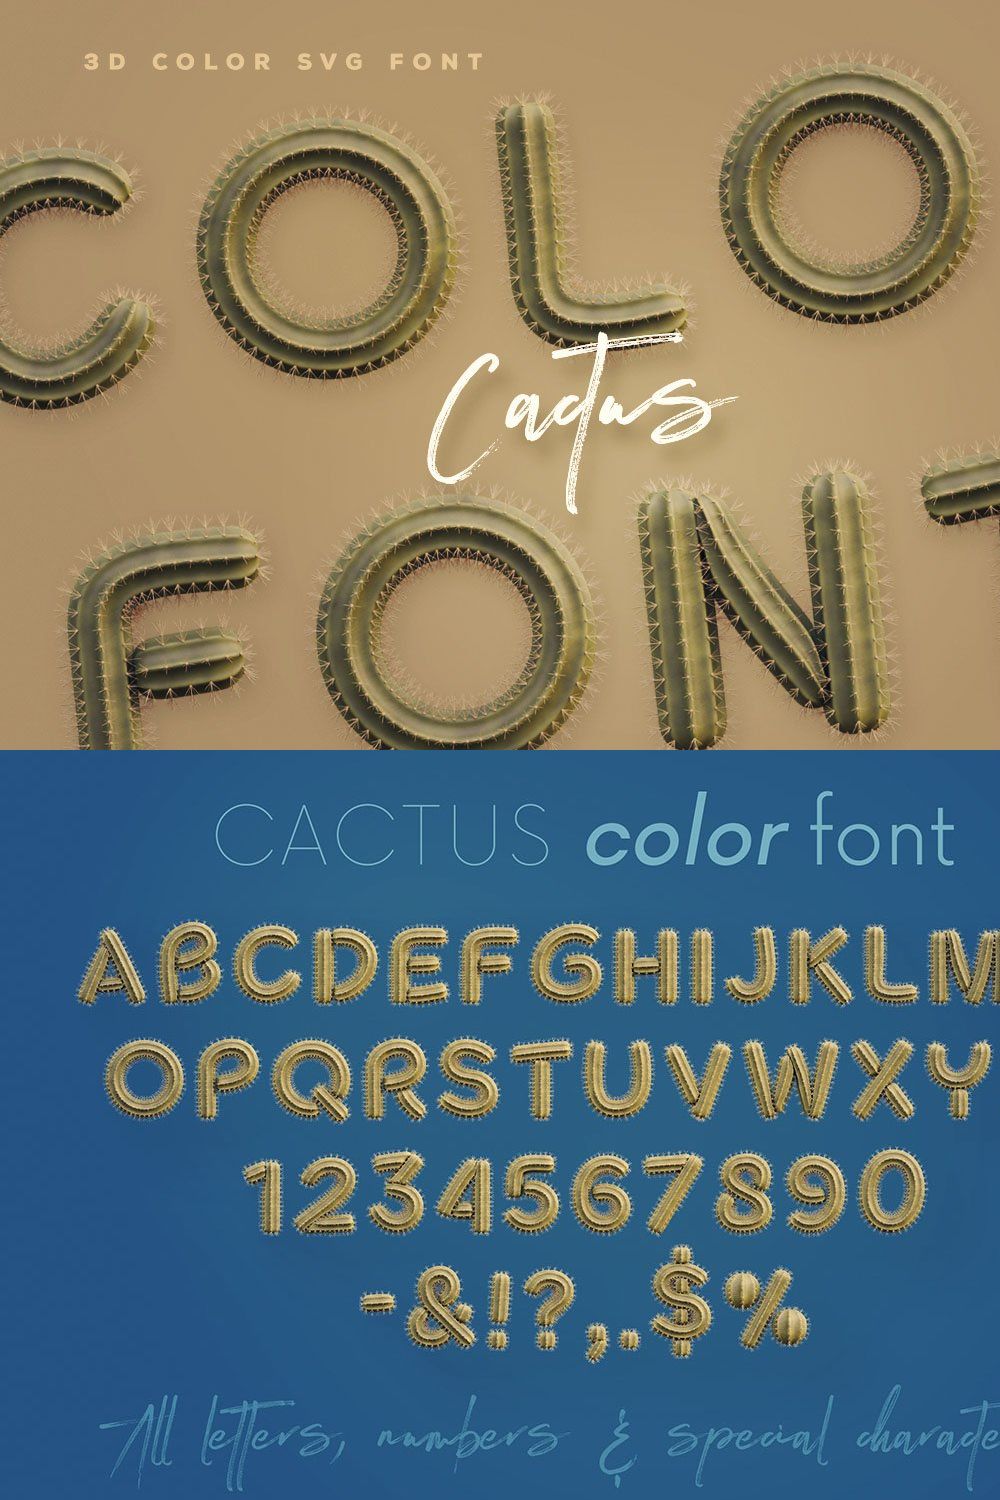 Cactus - Color Font pinterest preview image.